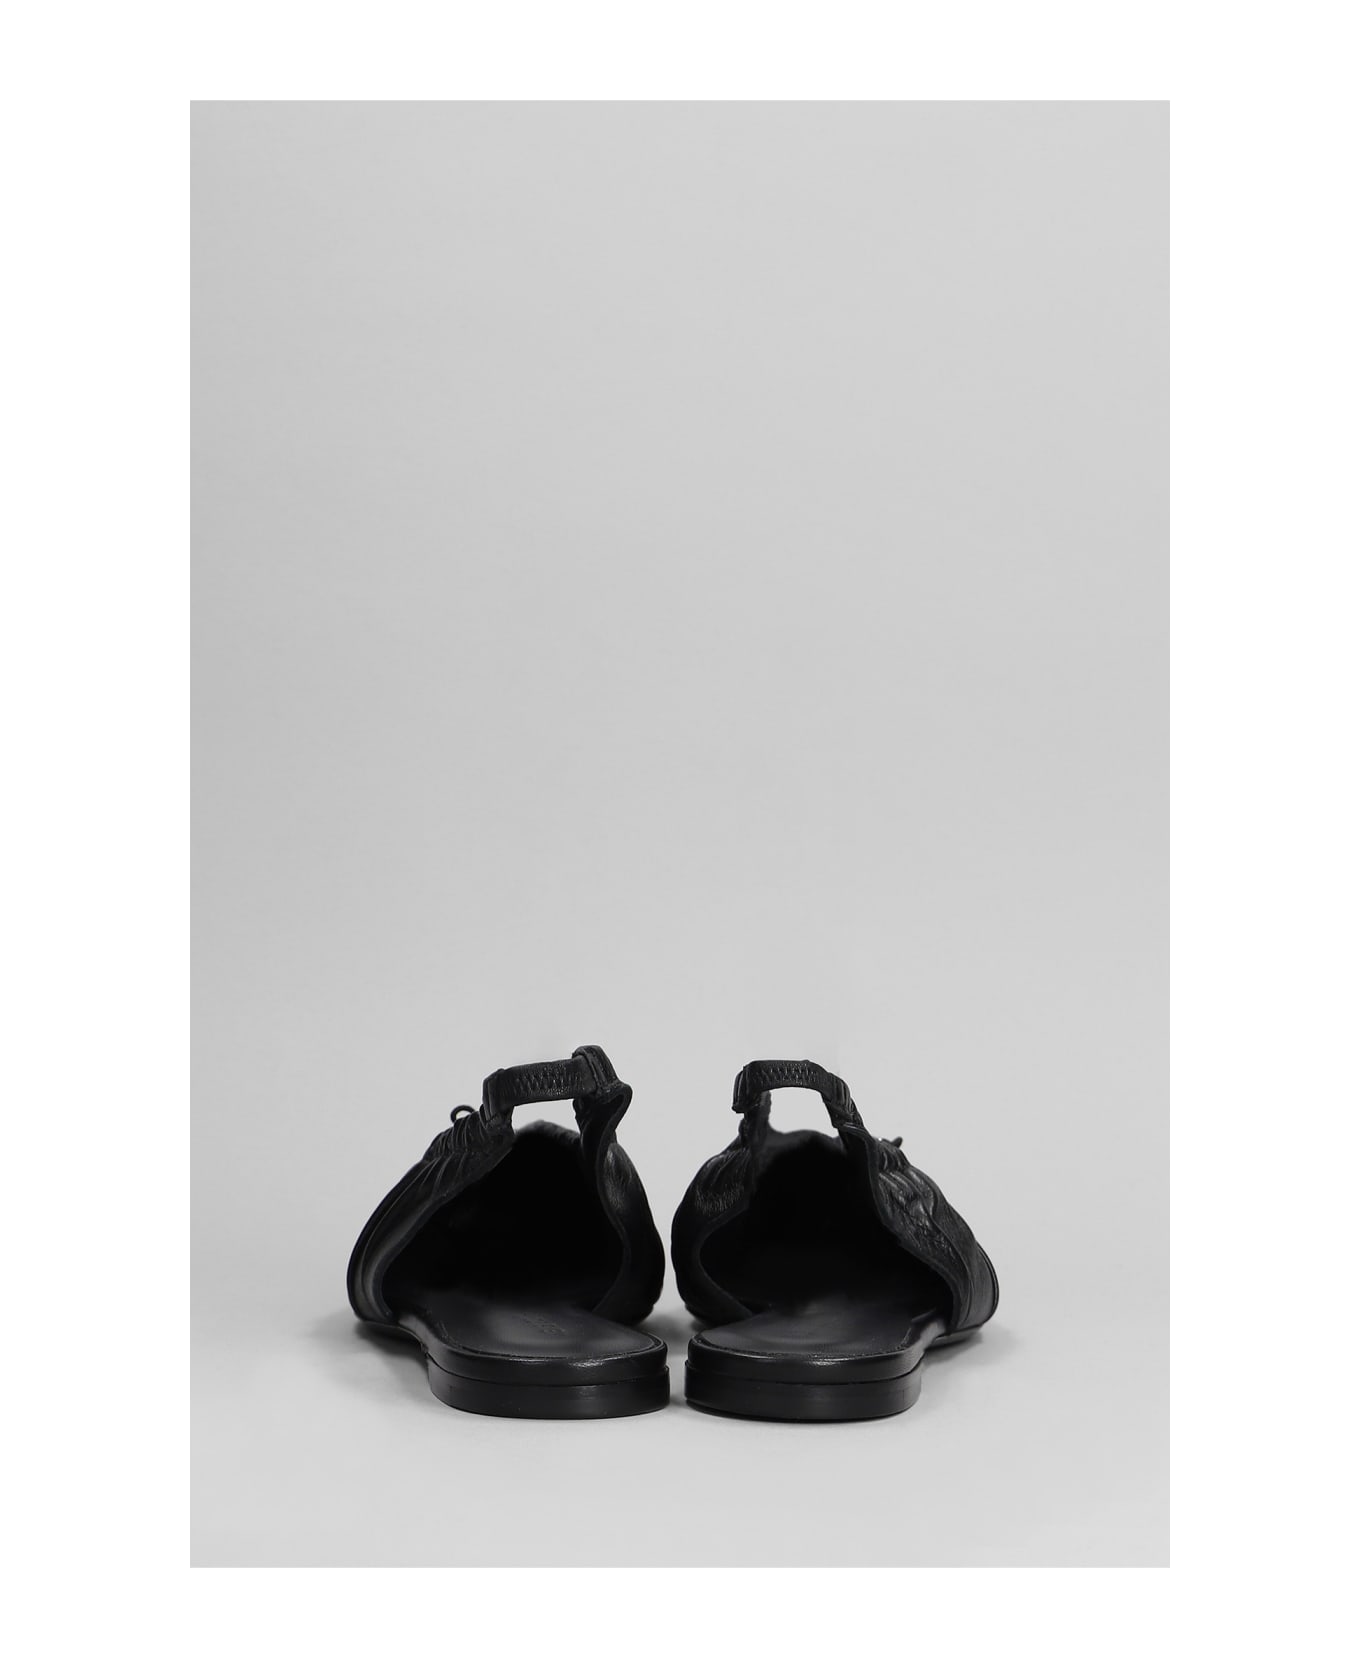 Nensi Dojaka Ballet Flats In Black Leather - black フラットシューズ